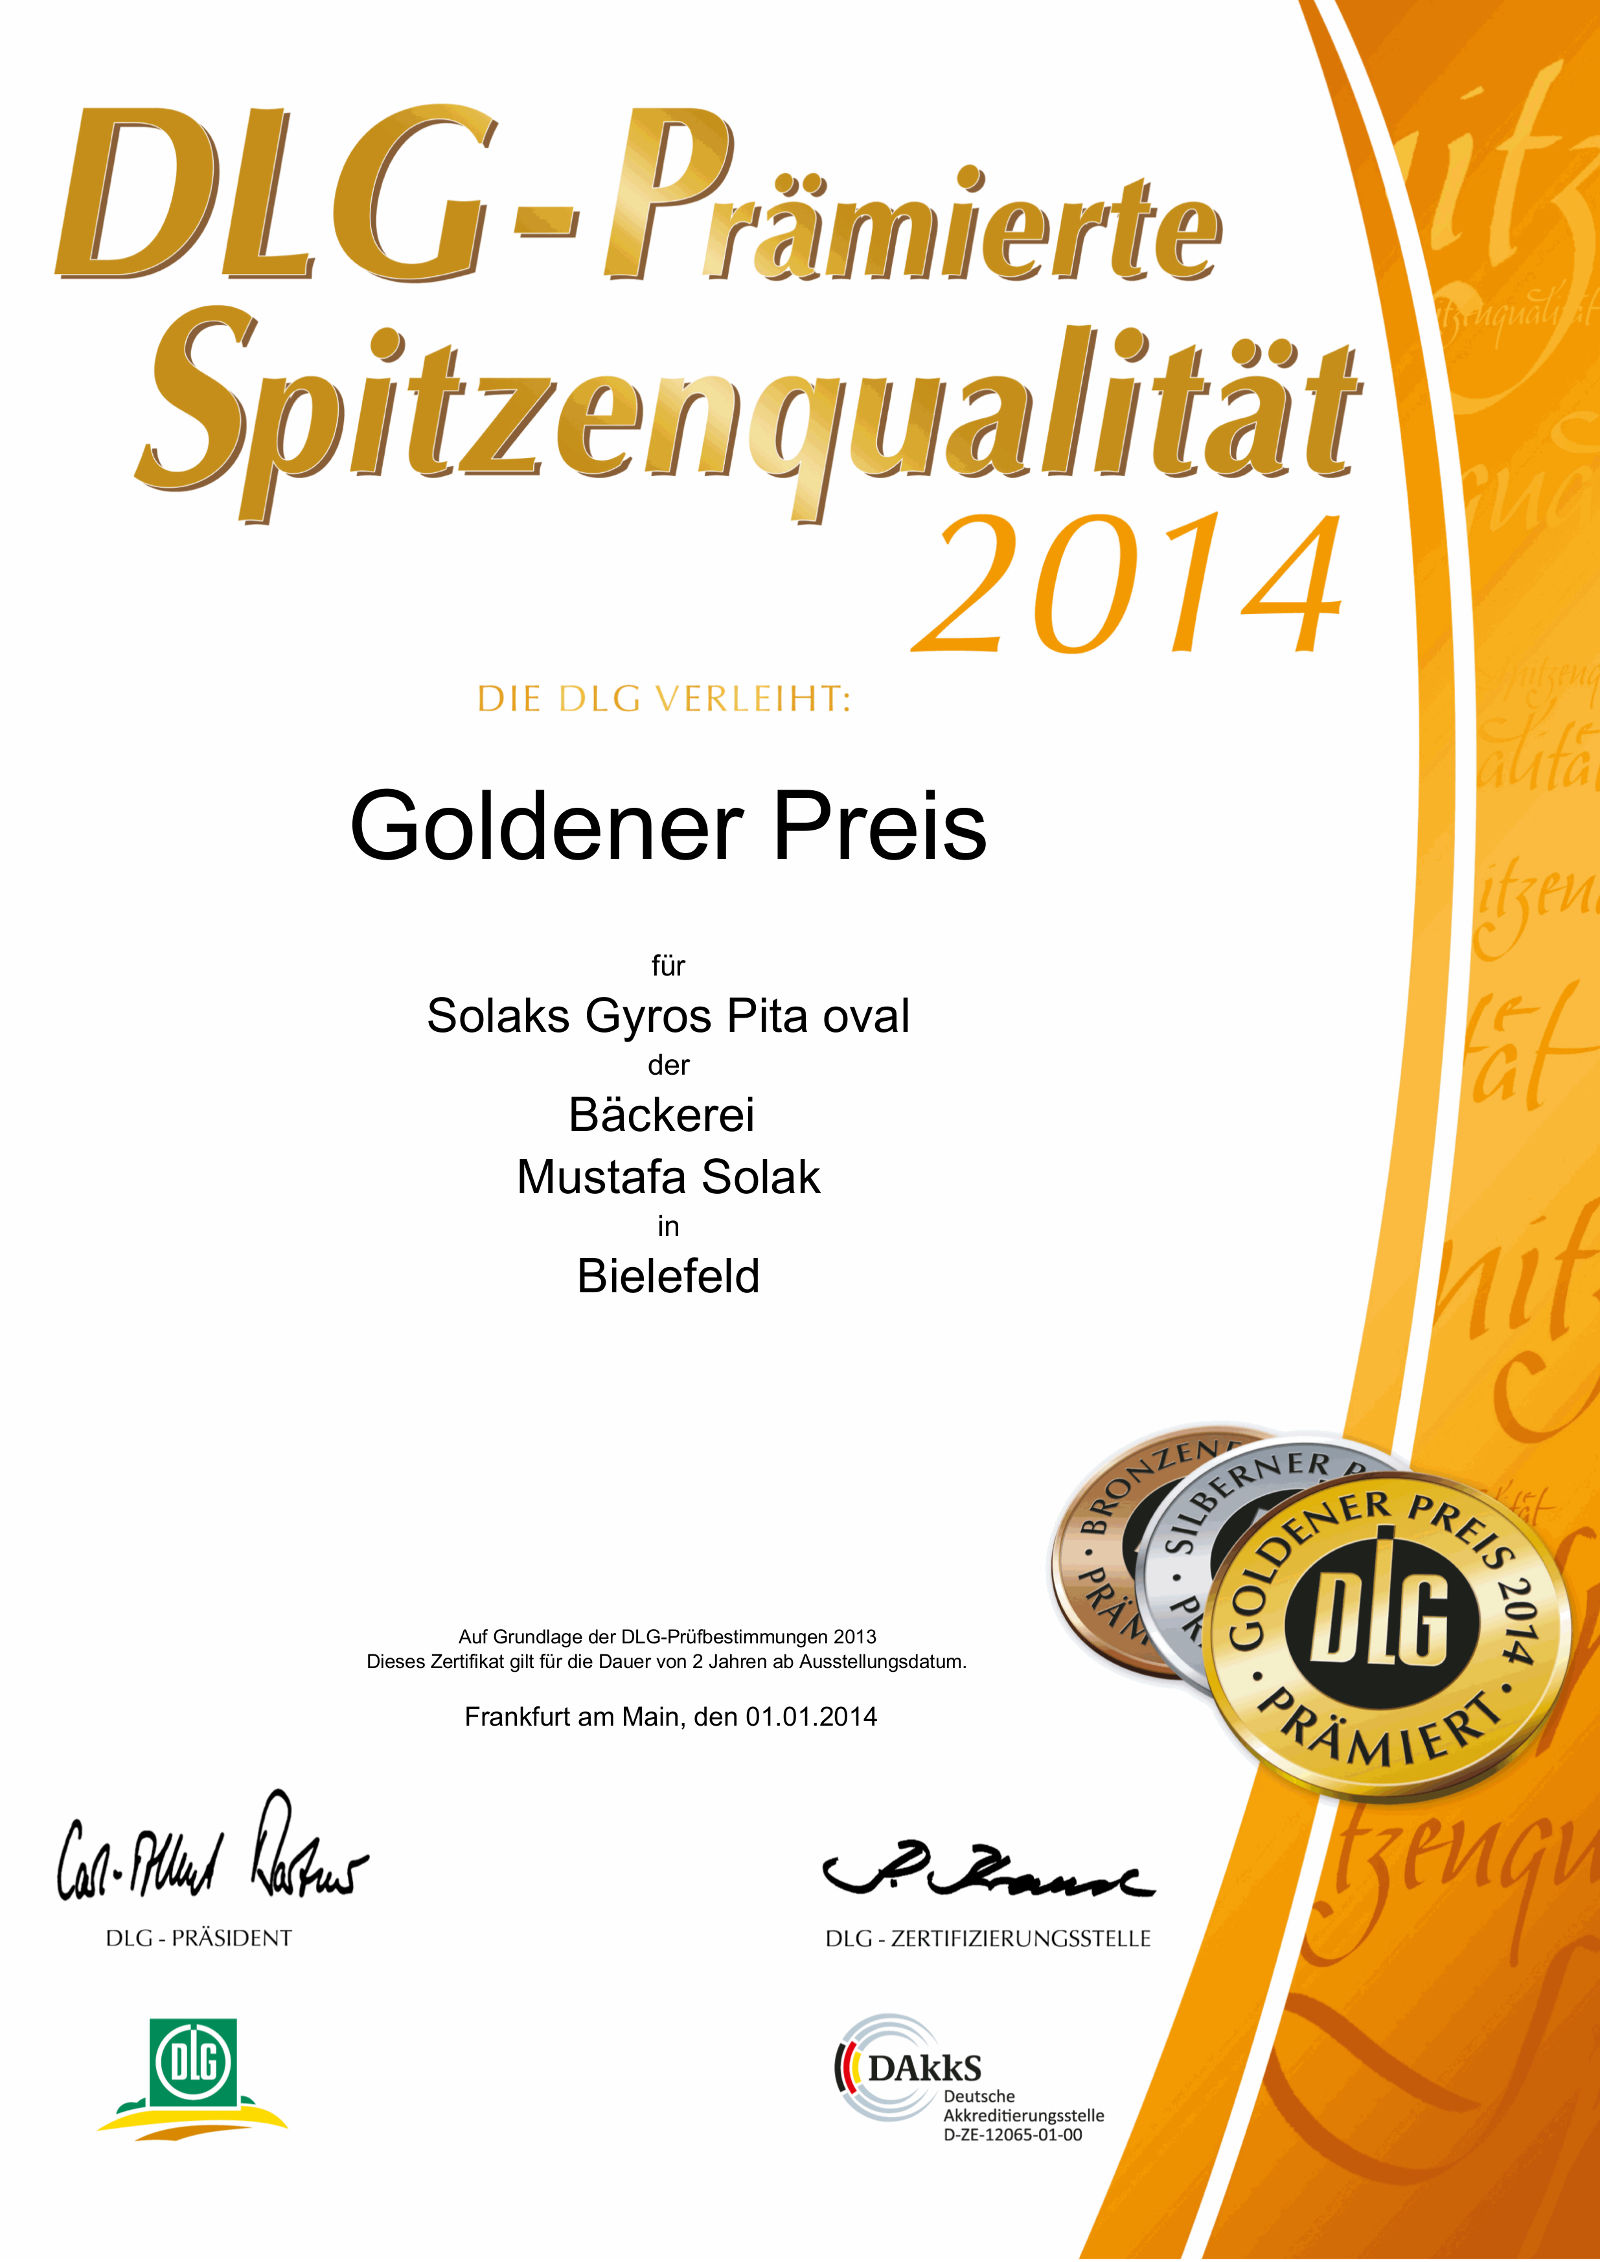 DLG Urkunde/Zertifikat: Goldener Preis 2014 | Spitzenqualität für Gyros Pita oval der Bäckerei Solak in Bielefeld